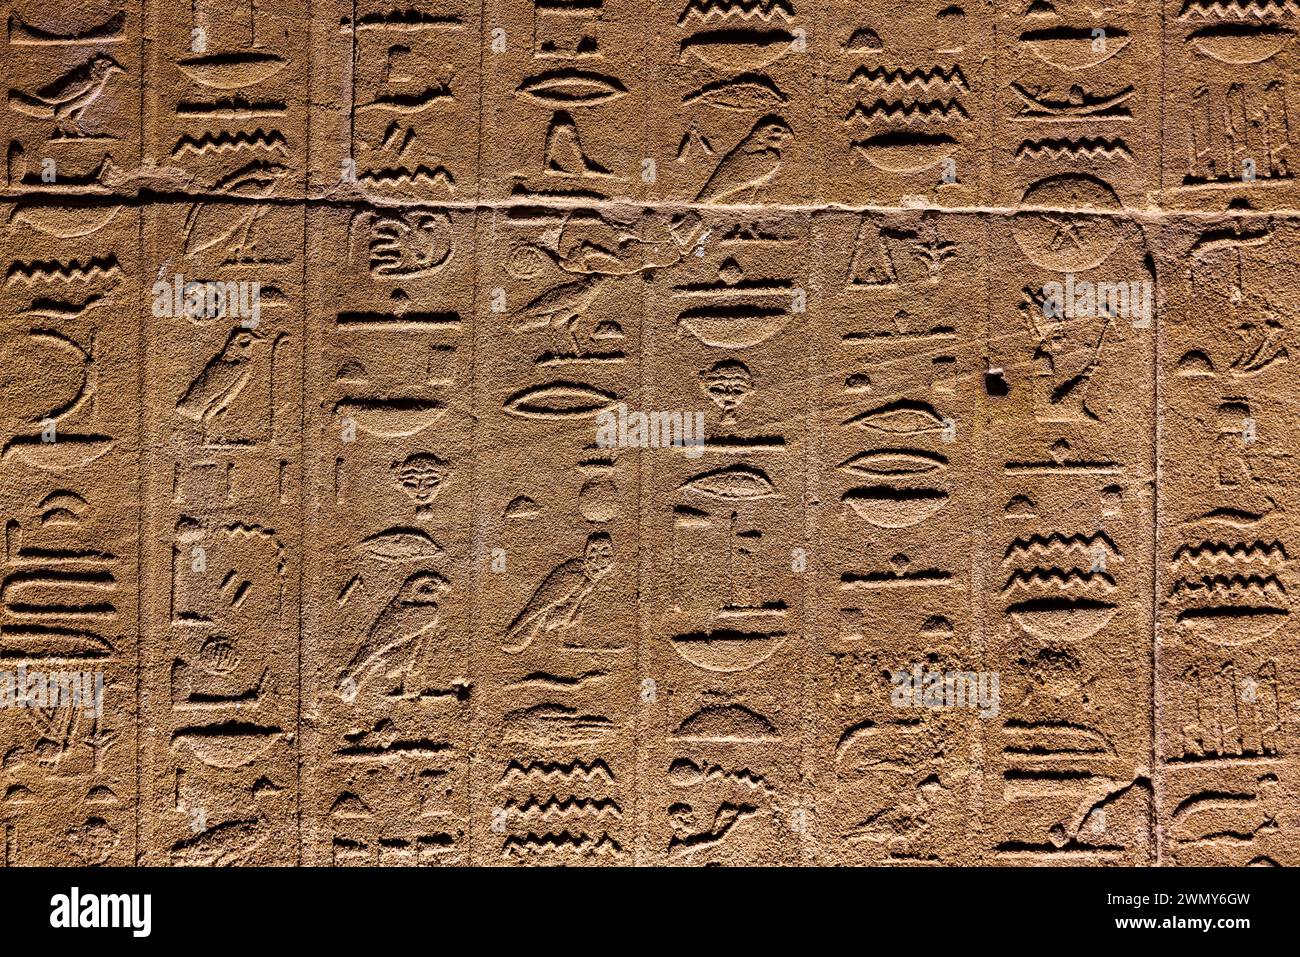 Ägypten, Assuan, nubische Denkmäler von Abu Simbel bis Philae, von der UNESCO zum Weltkulturerbe erklärt, Isis-Tempel in Philae, Hieroglyphen Stockfoto